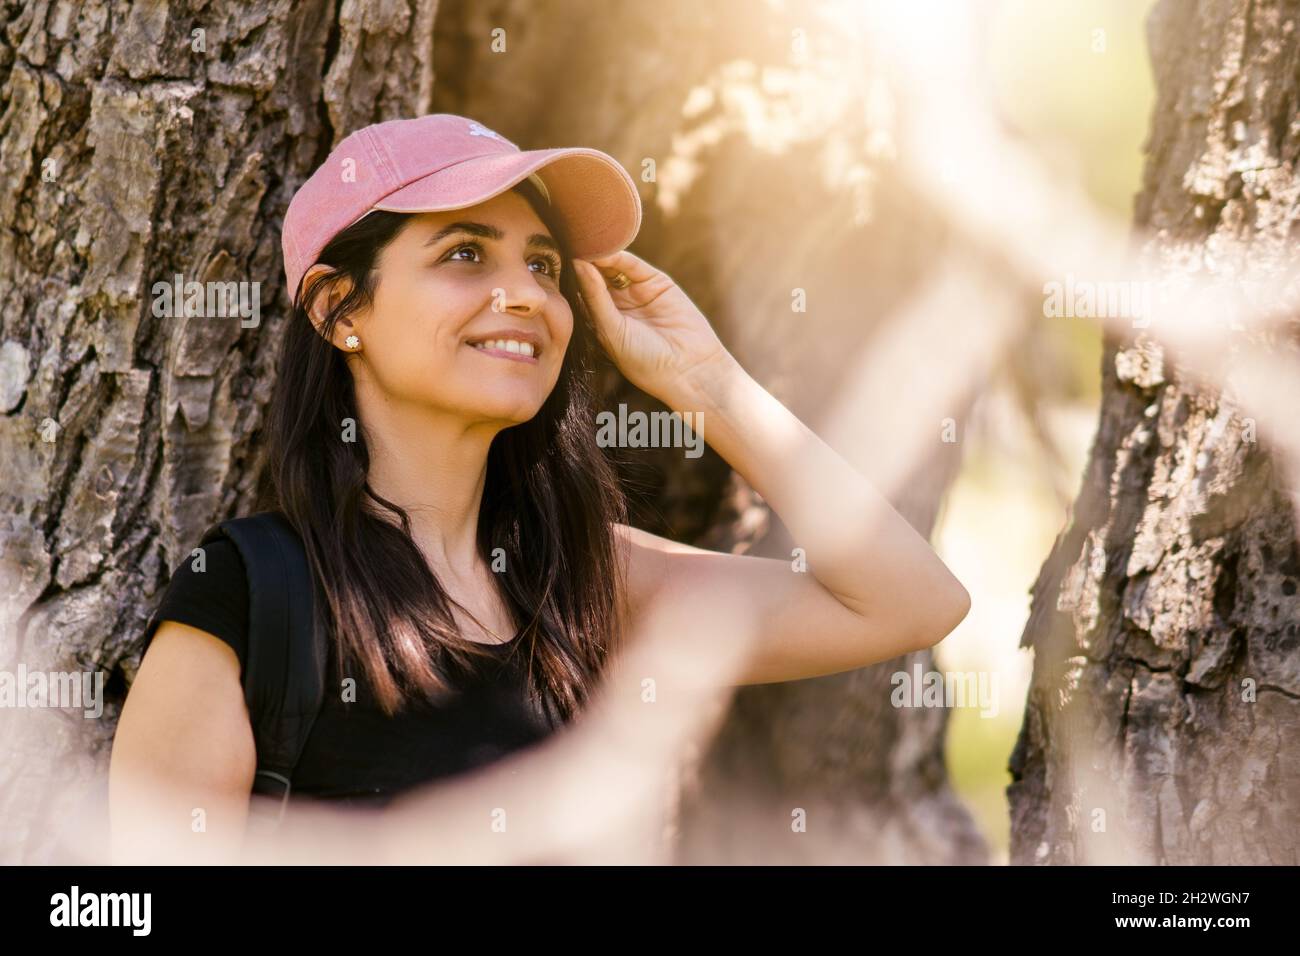 Jeune femme avec chapeau de sport rose souriant dans la nature.Photo de haute qualité Banque D'Images